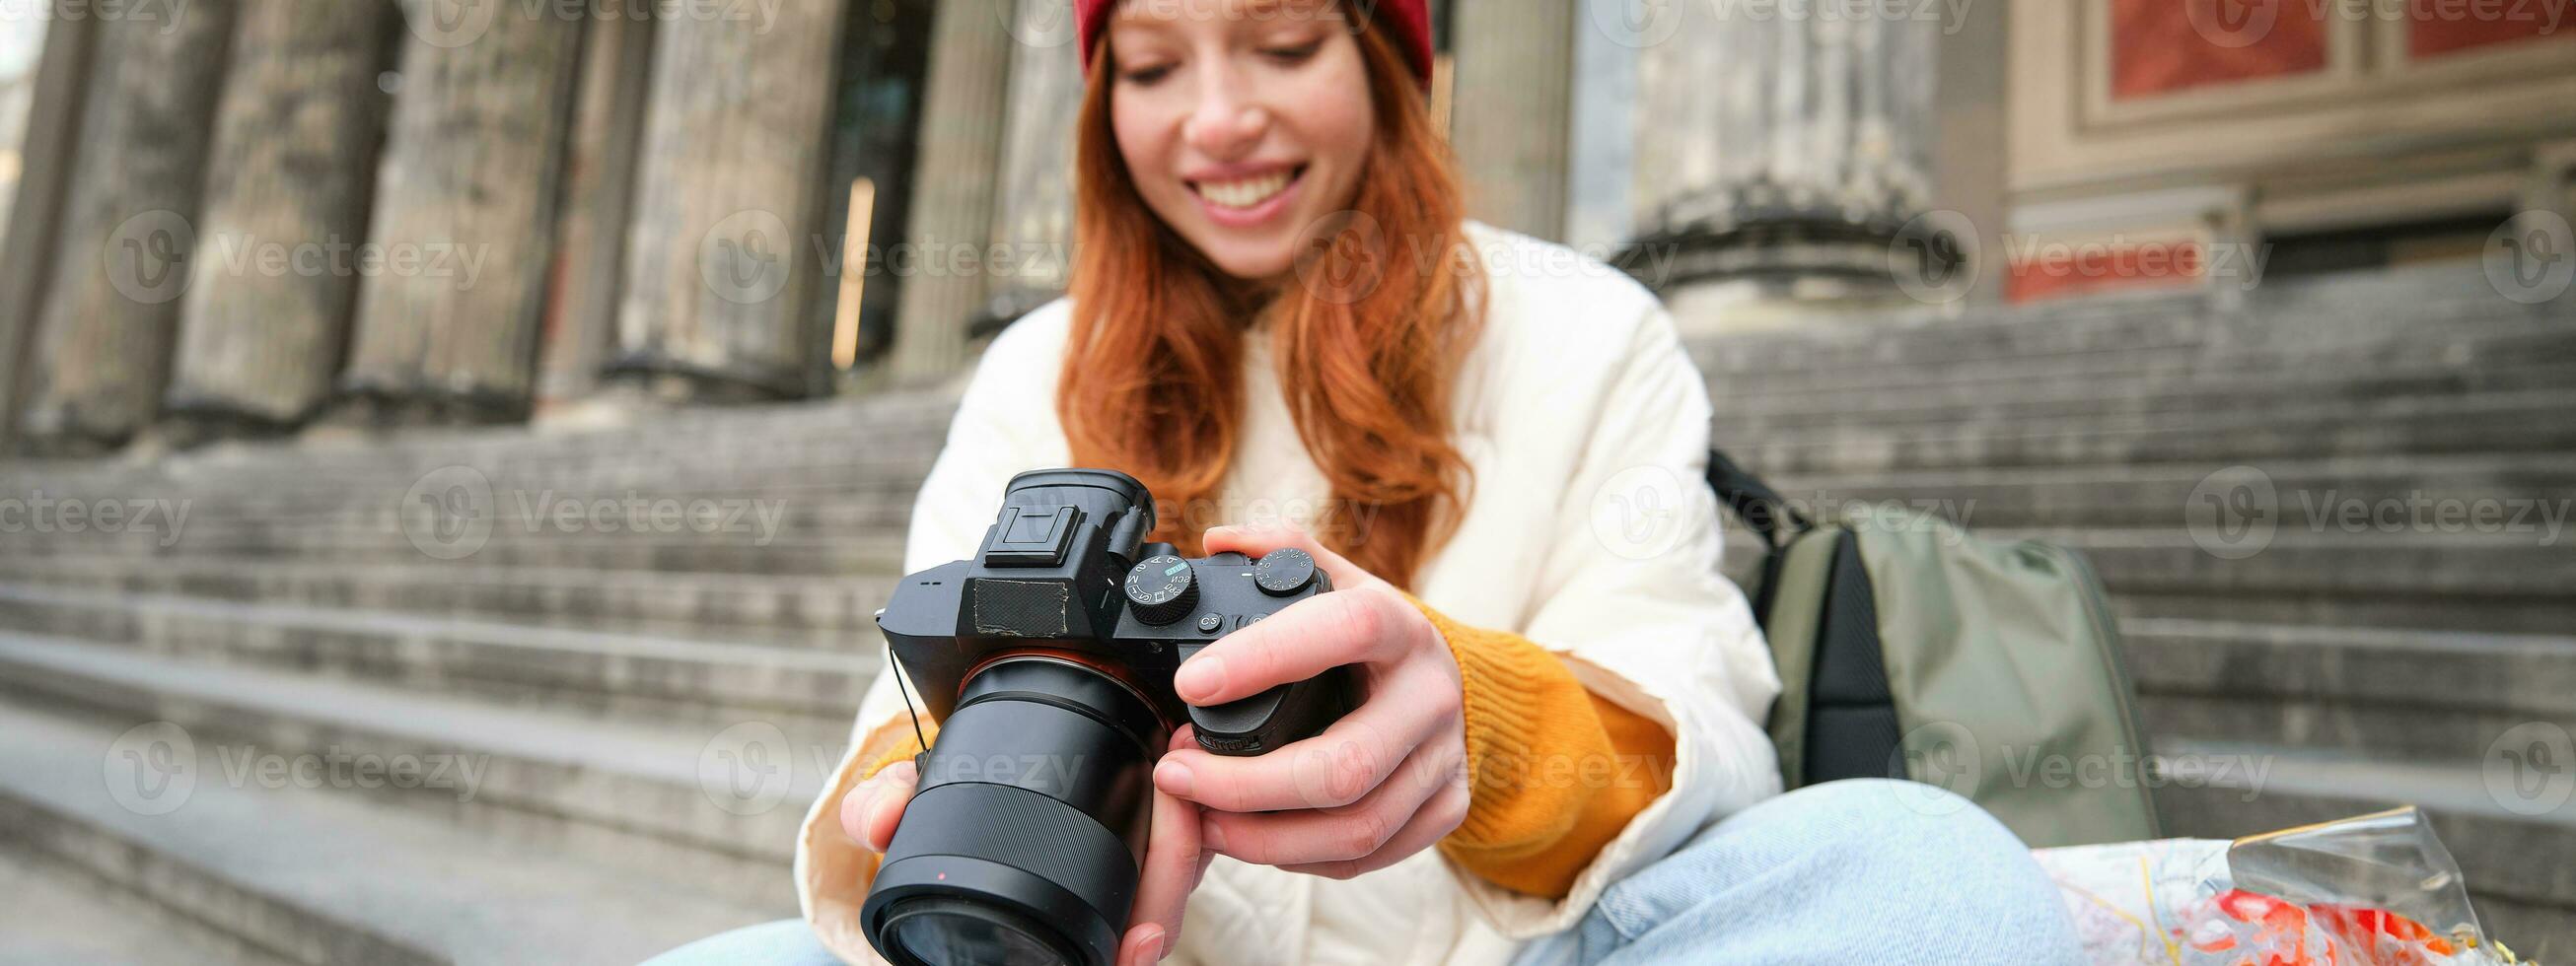 jong leerling, fotograaf zit Aan straat trap en cheques haar schoten Aan professioneel camera, nemen foto's buitenshuis foto